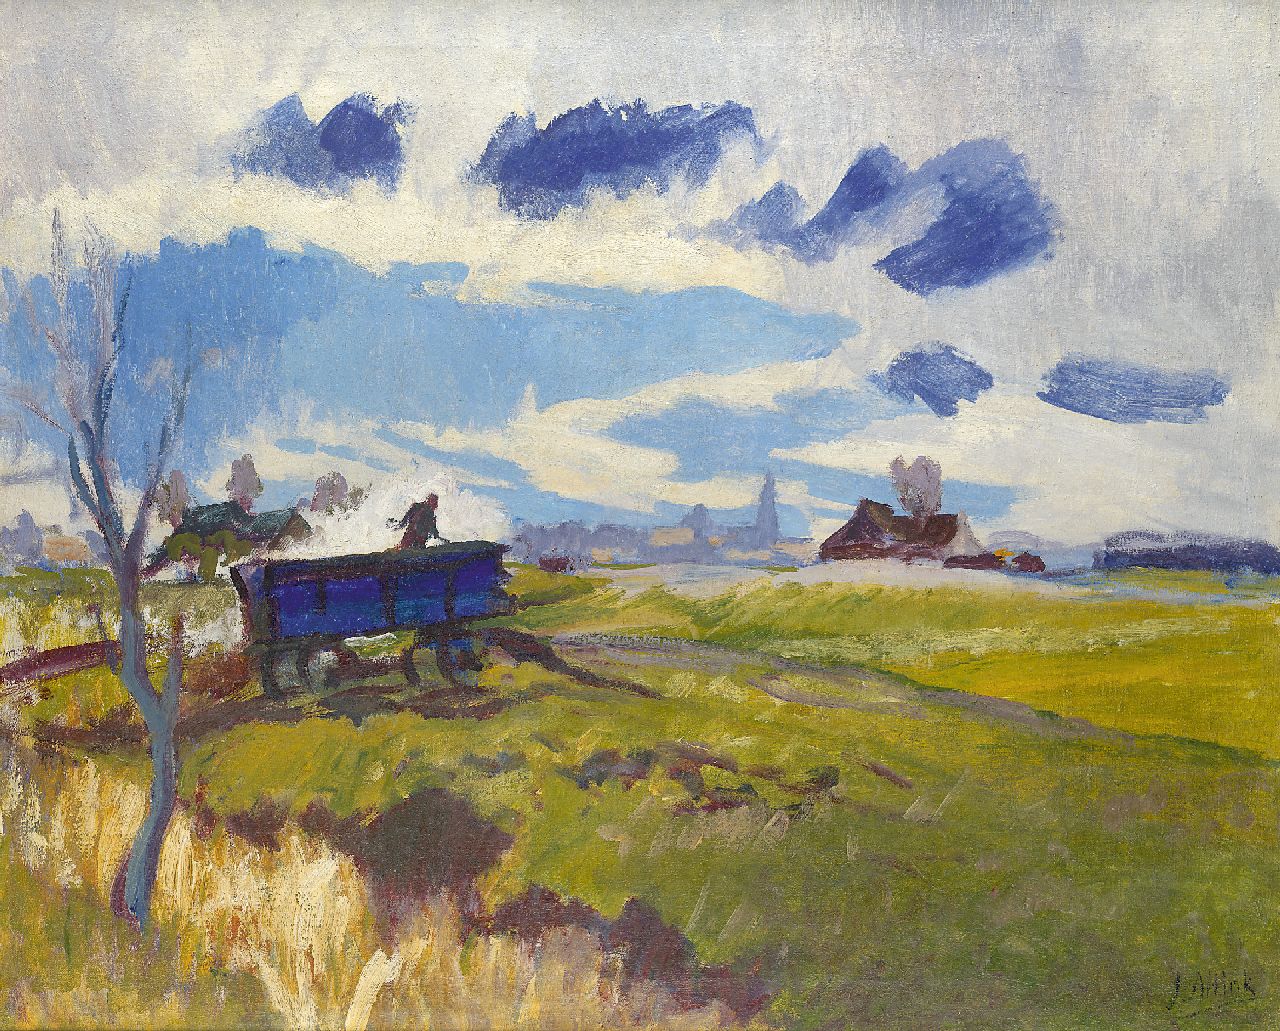 Altink J.  | Jan Altink, Landscape in Groningen with blue wagon, Öl auf Leinwand 64,1 x 78,2 cm, signed l.r. und zu datieren ca. 1930